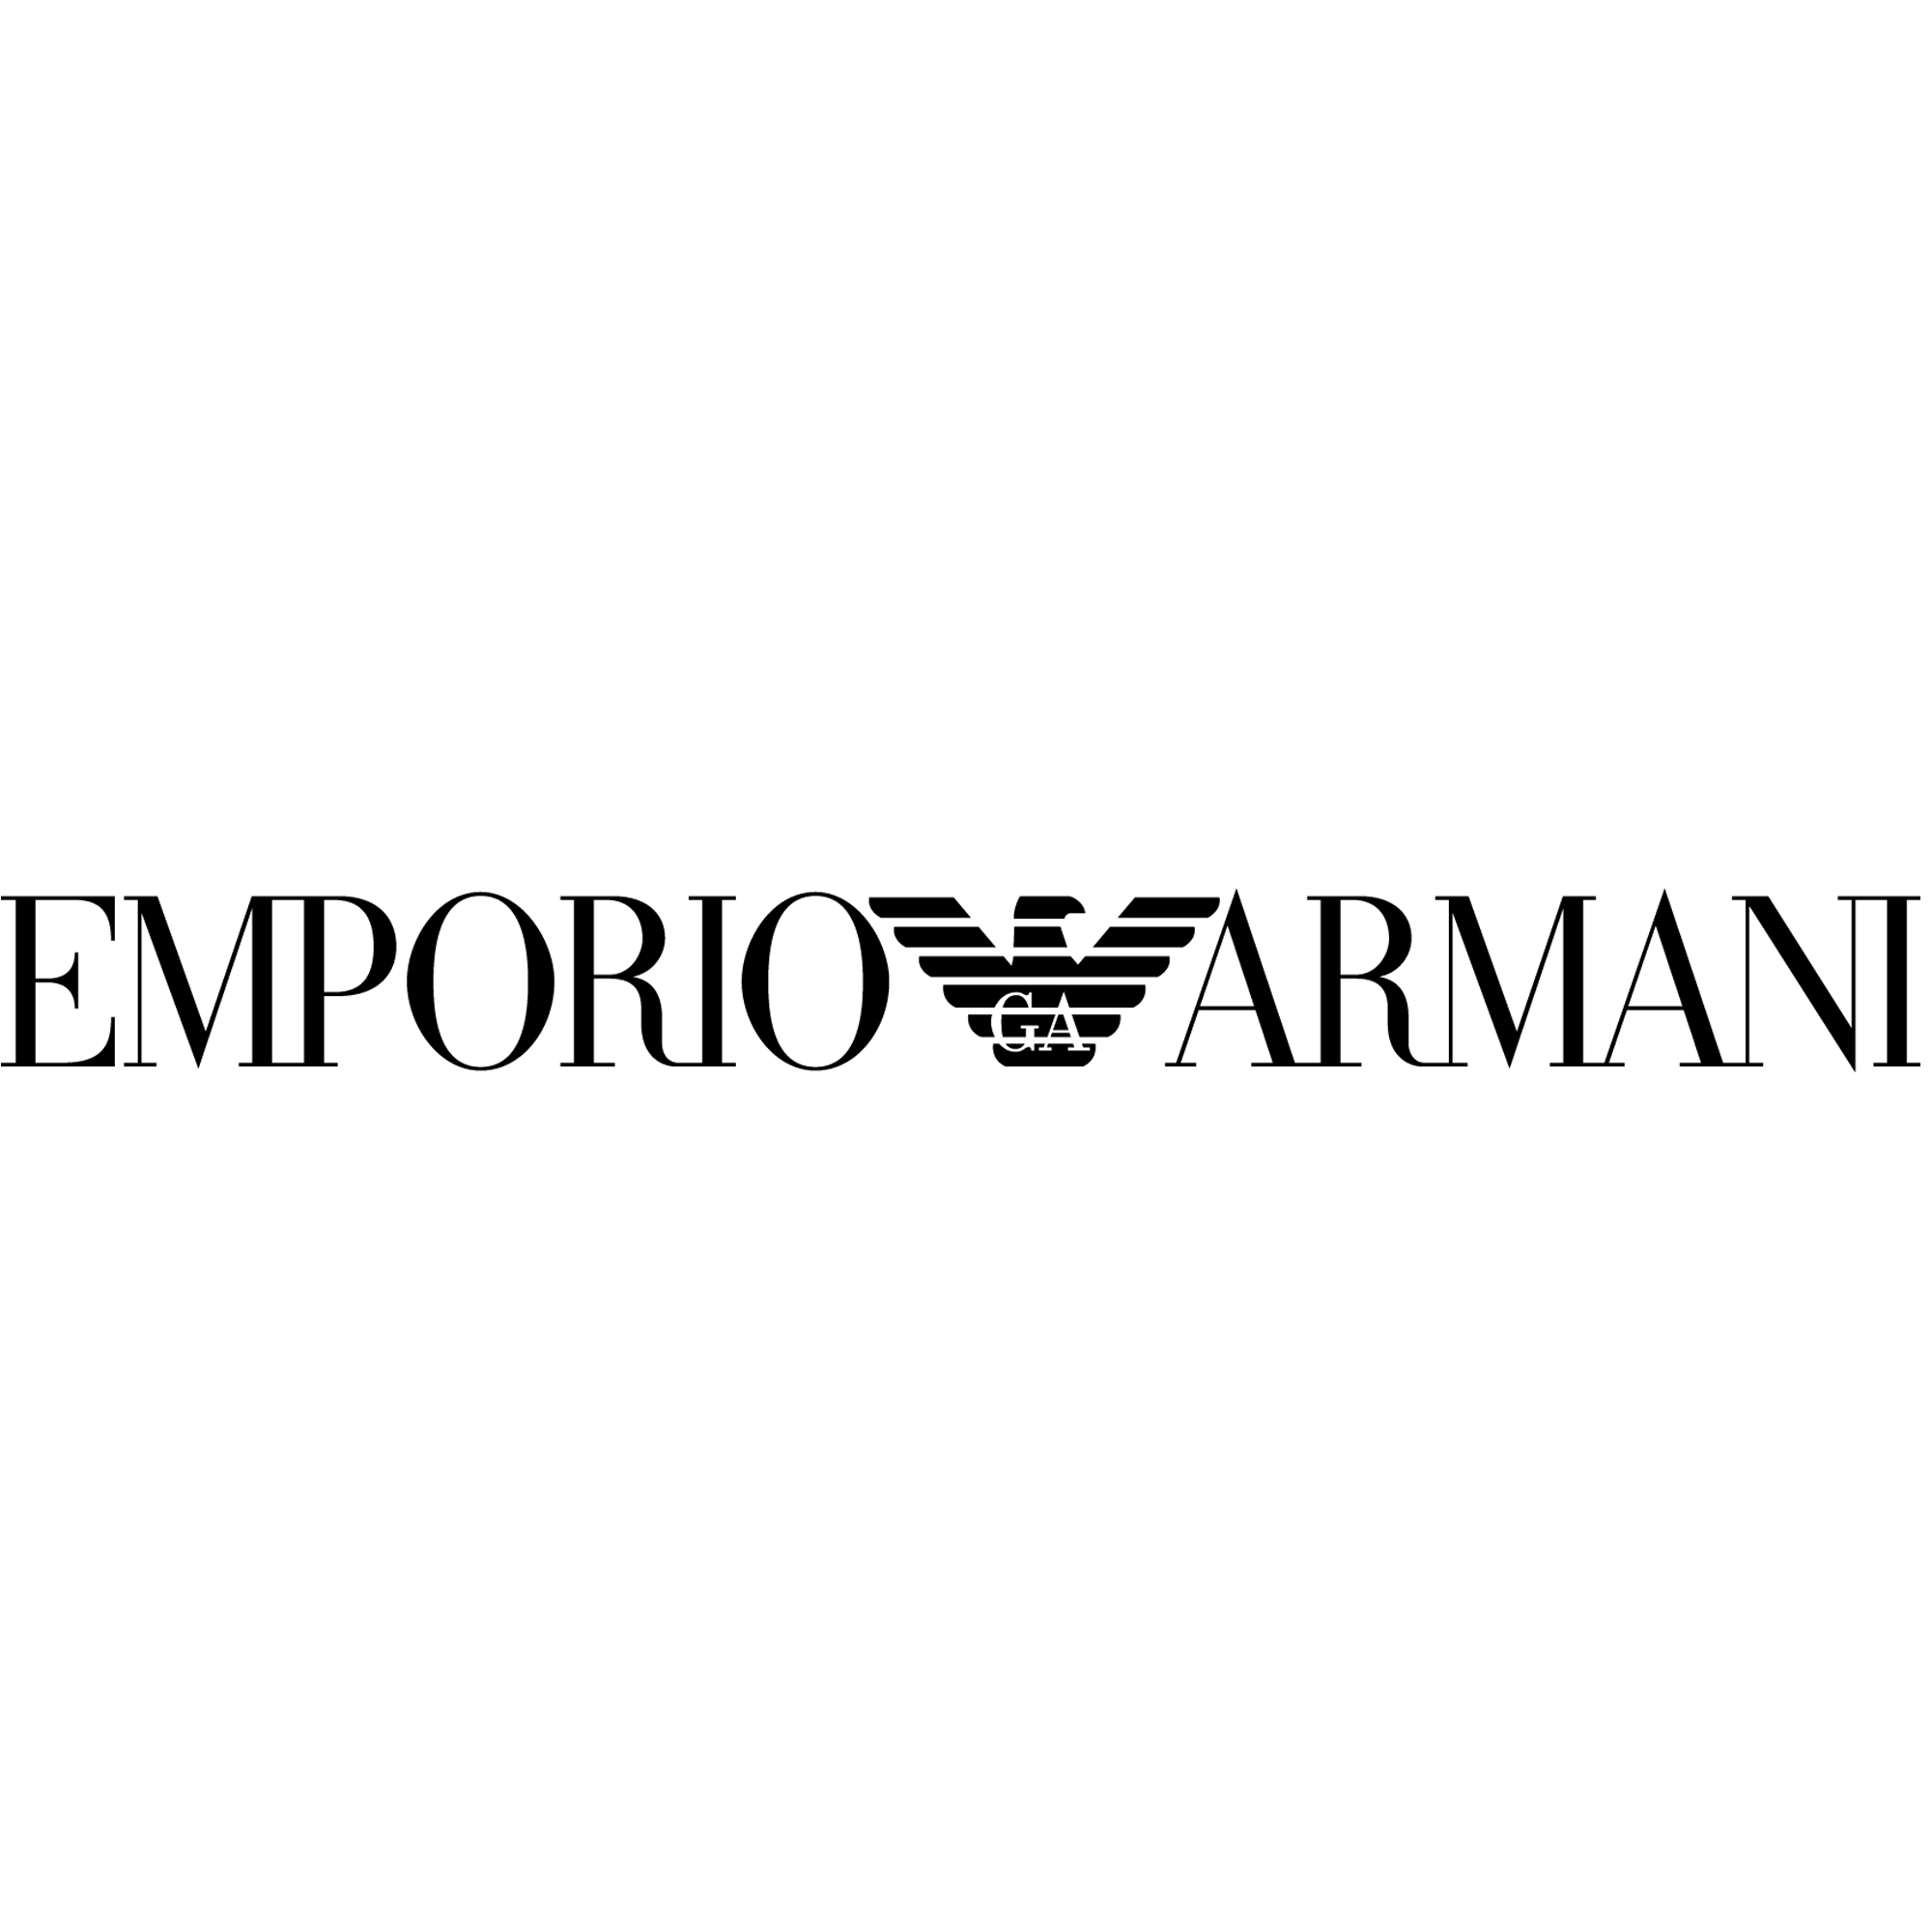 Armani Logo - Emporio-Armani-logo-wordmark - DJ Tao Boston